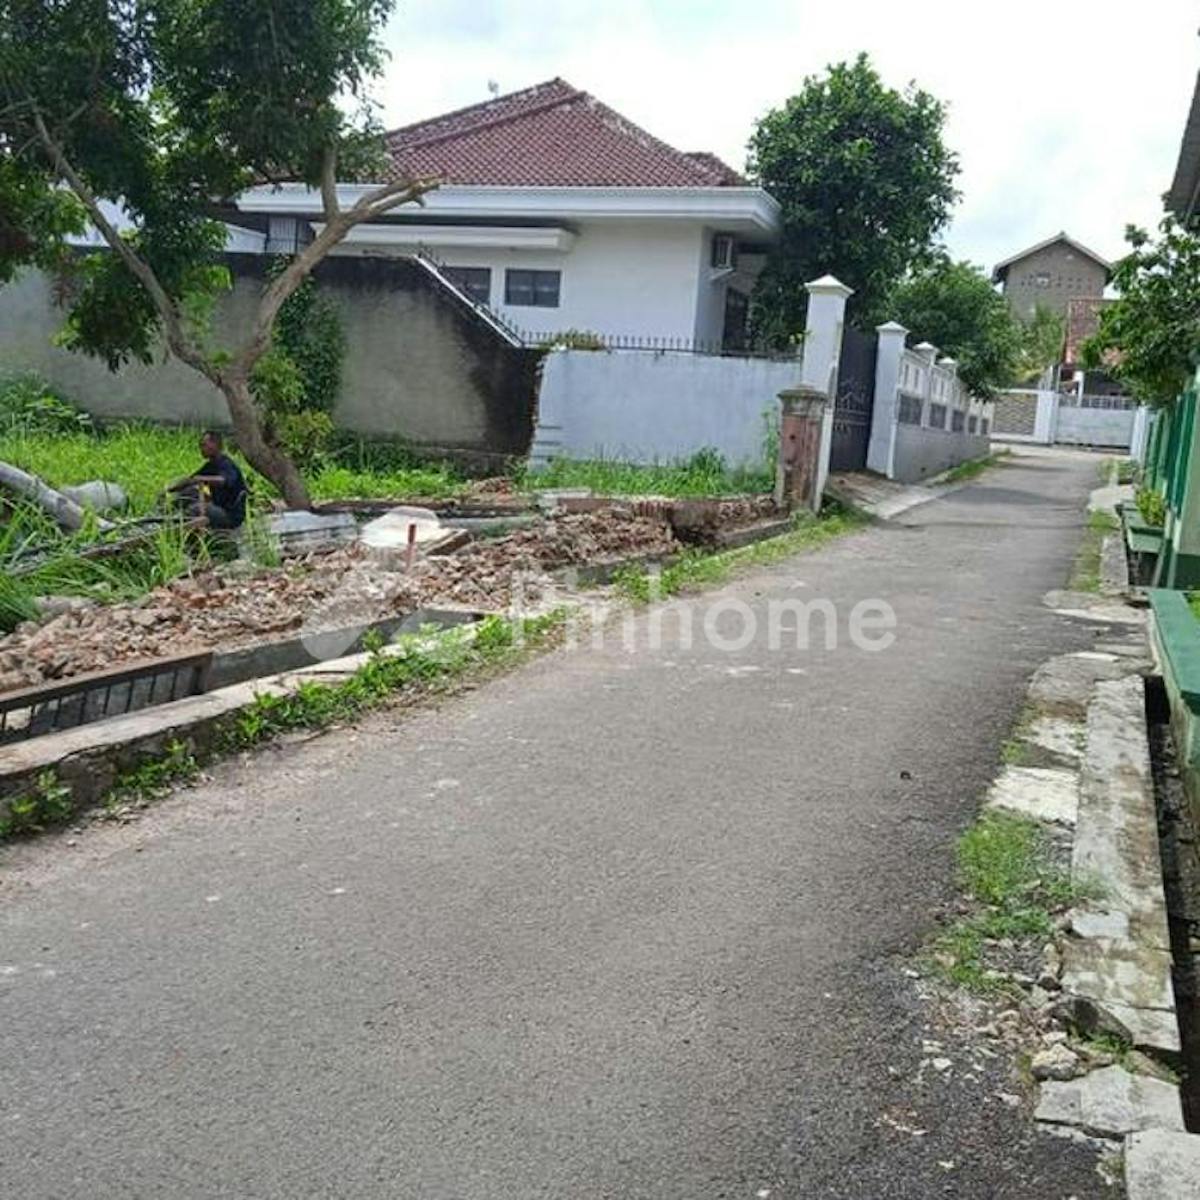 Dijual Tanah Residensial Sangat Strategis di Jl. Delima Kota Sepang Bandar Lampung - Gambar 1